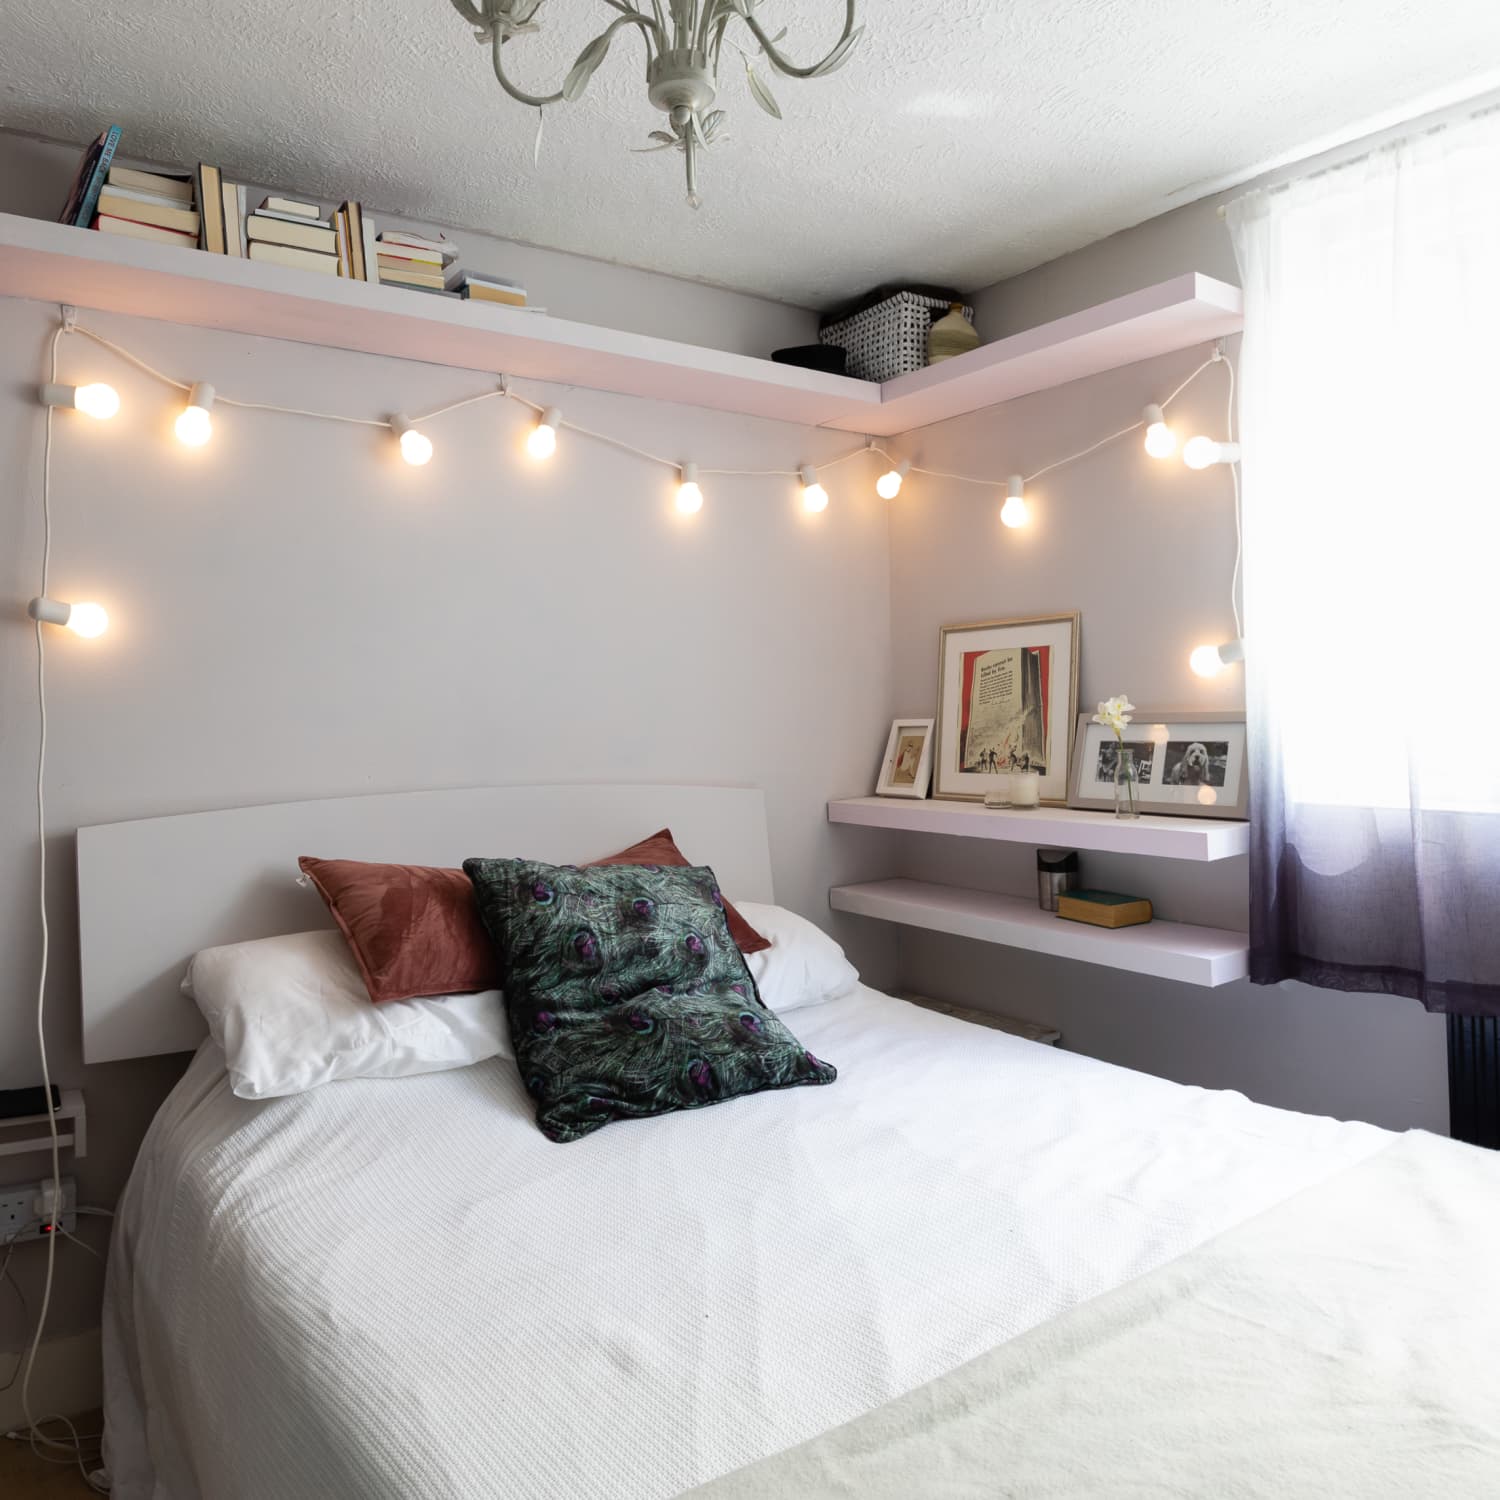 Bedroom Fairy Light ideas: 10 Ways to Hang String Lights